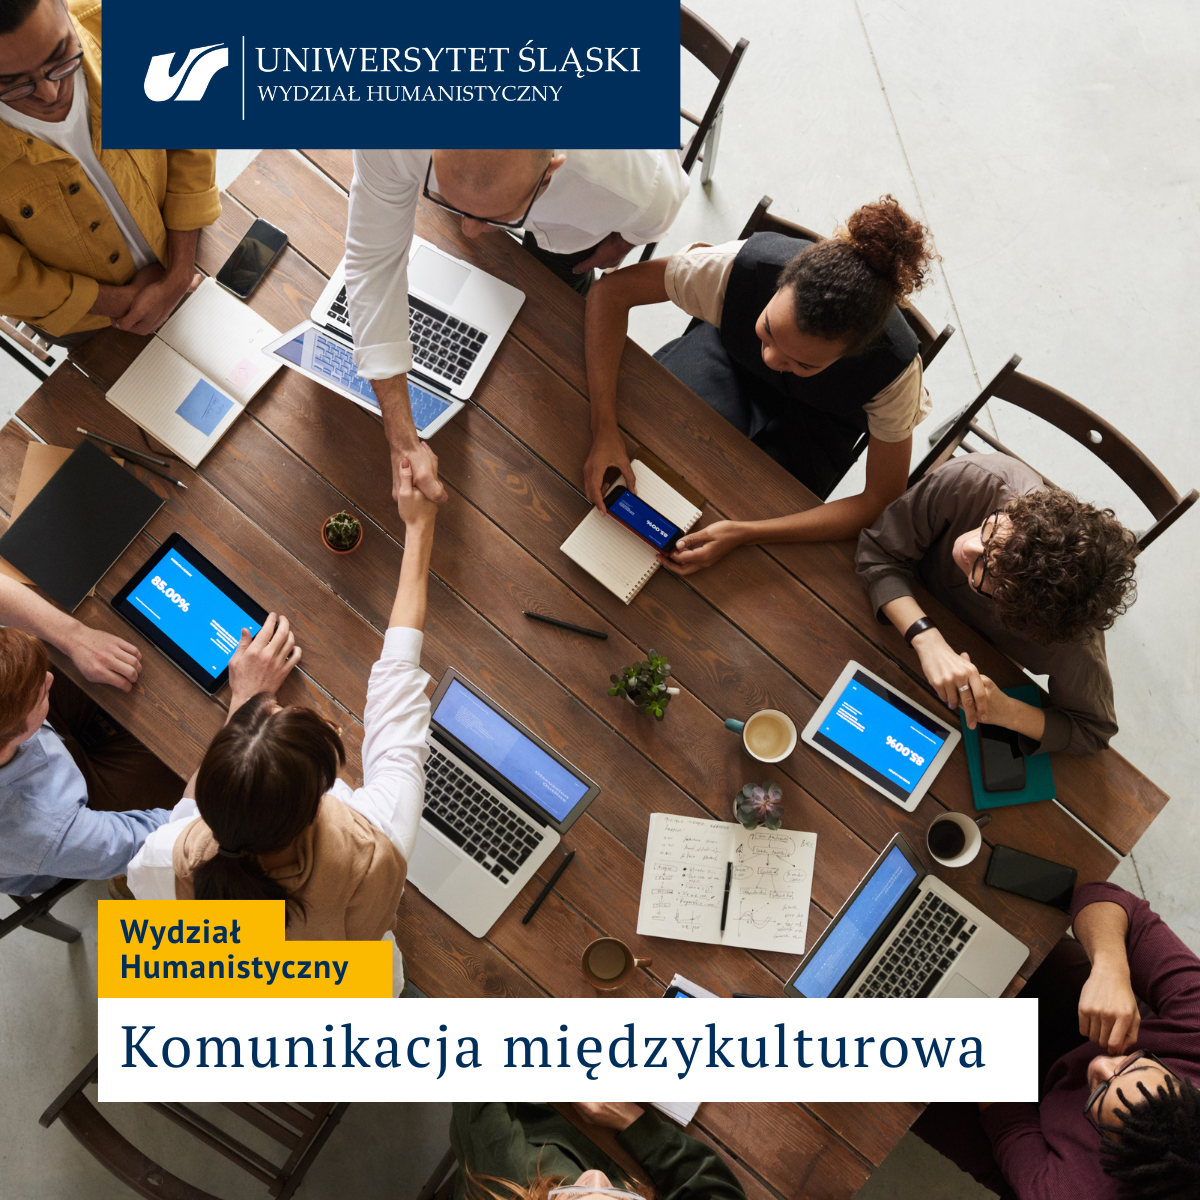 zdjęcie grupy osób siedzących z komputerami przy stole, dwoje z nich podaje sobie ręce, u góry logo Uniwersytetu Śląskiego, na dole napis Wydział Humanistyczny Komunikacja międzykulturowa